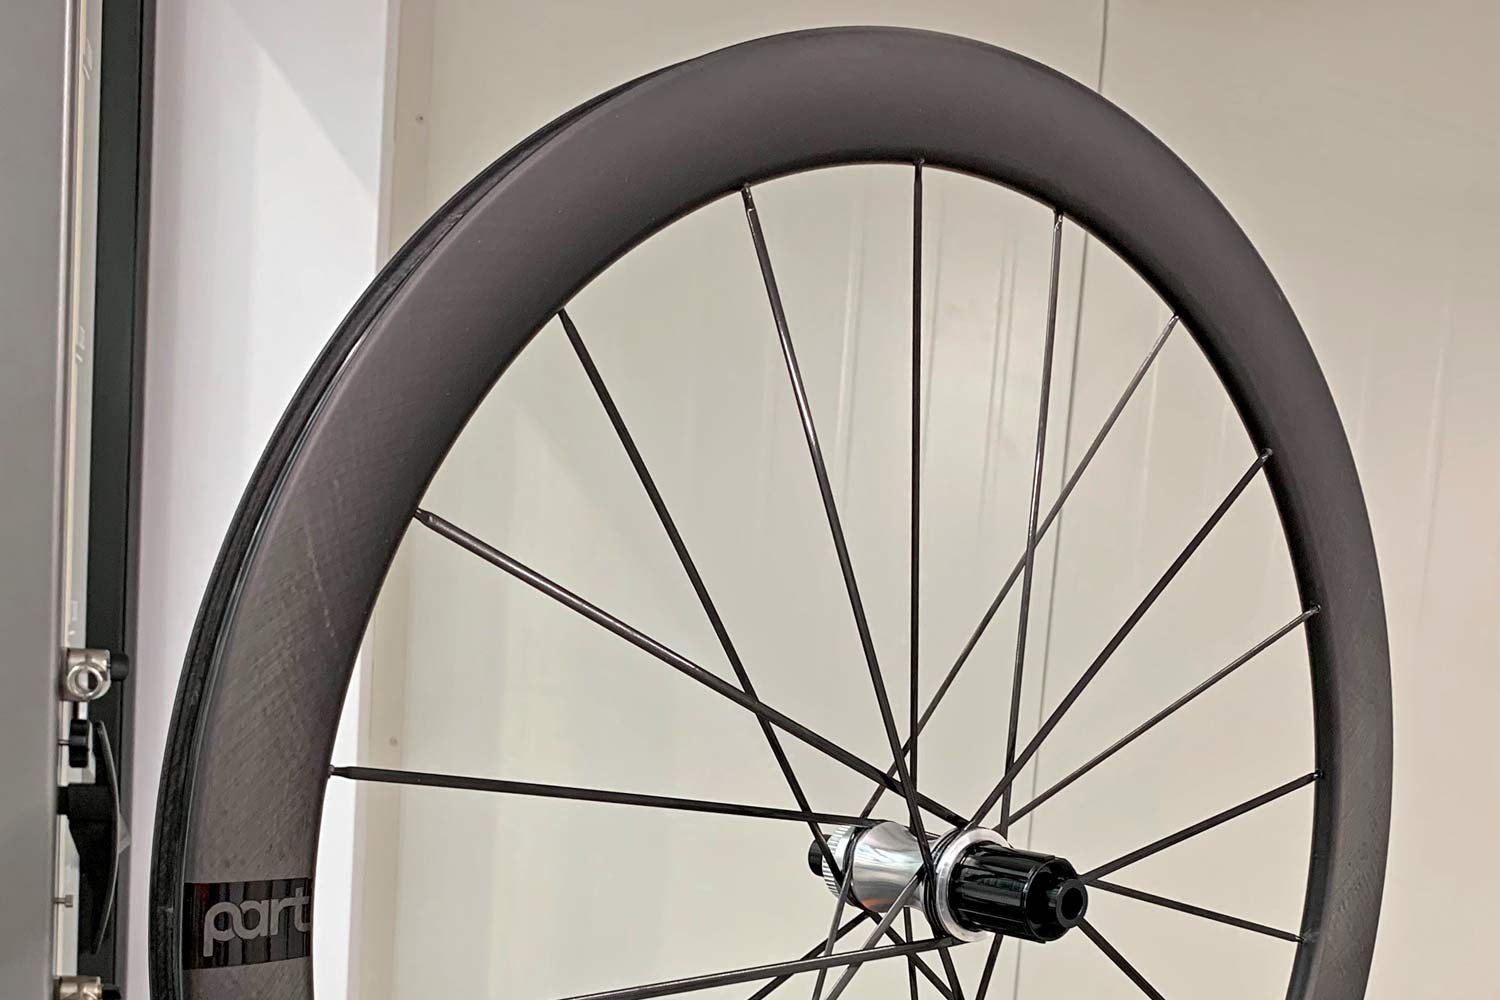 composite bike wheels